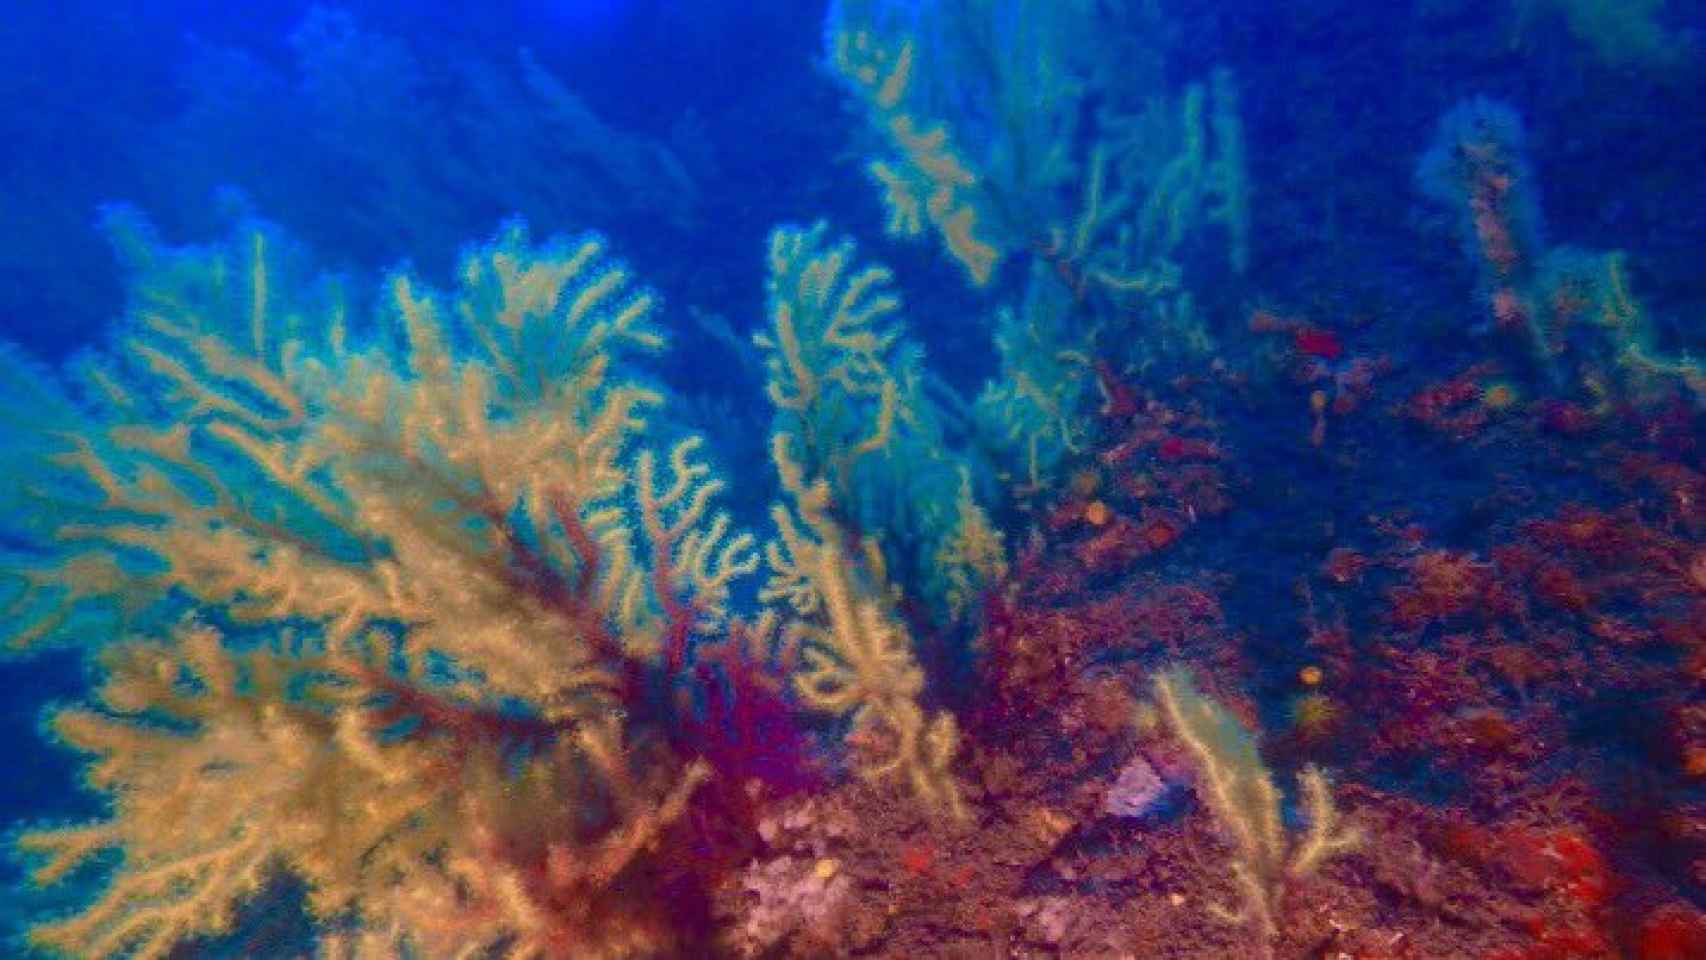 Fondos de corales en el Canal de Menorca